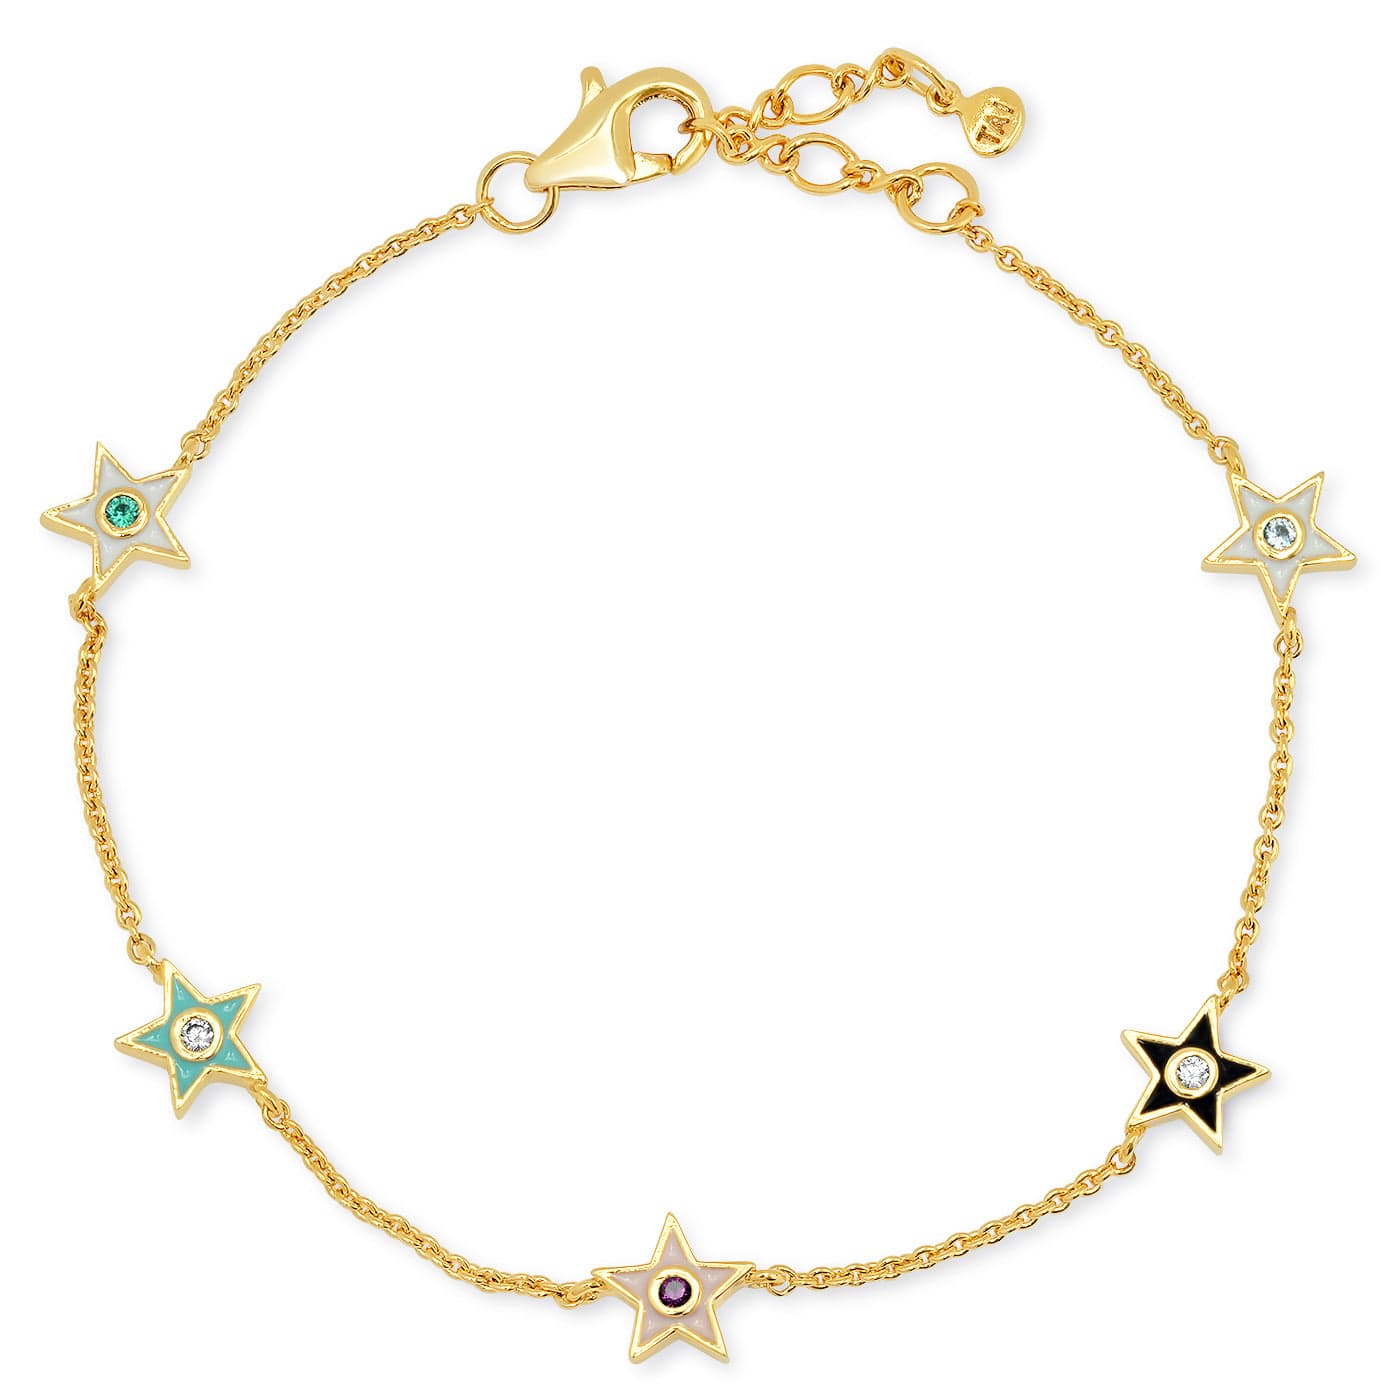 TAI JEWELRY Bracelet STAR Star Enamel Chain Bracelet